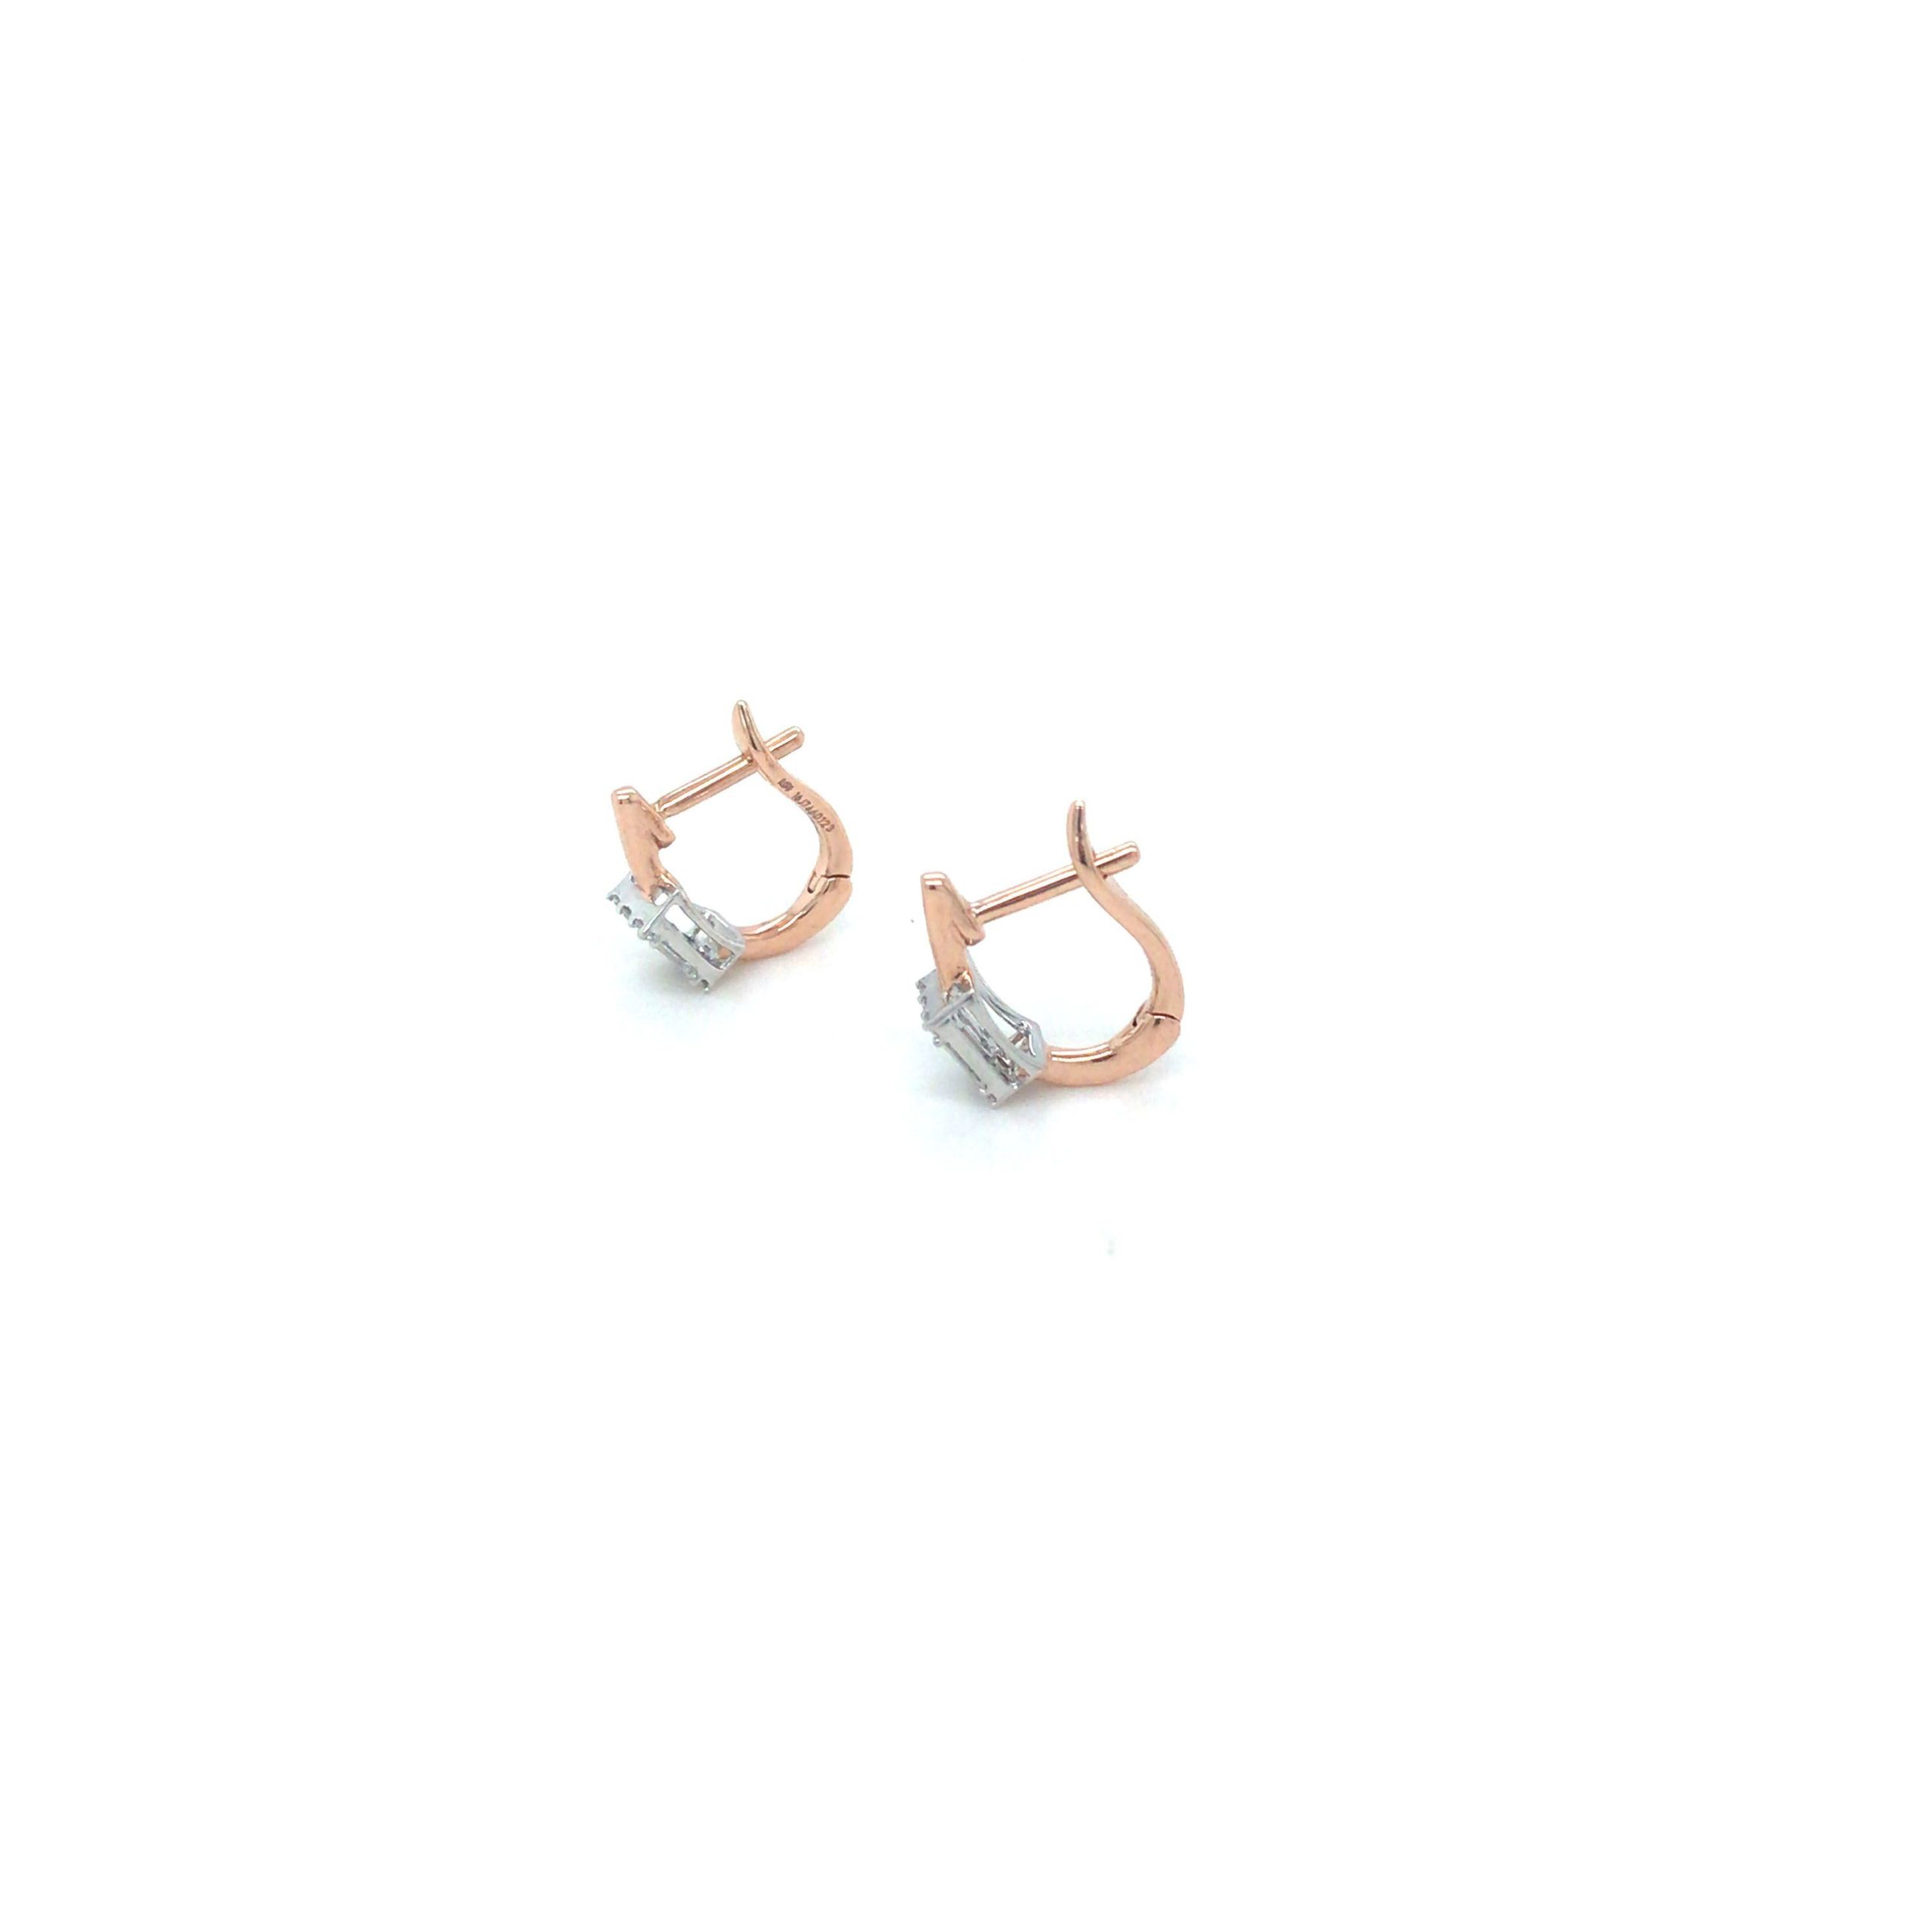 Rose Gold Diamond Dangle Earrings / 18k Rose Gold Women Earrings / Natural  Pear Shape Diamond Earrings / Gold Diamond Jewelry / Gift for Her - Etsy | Gold  diamond dangle earrings,